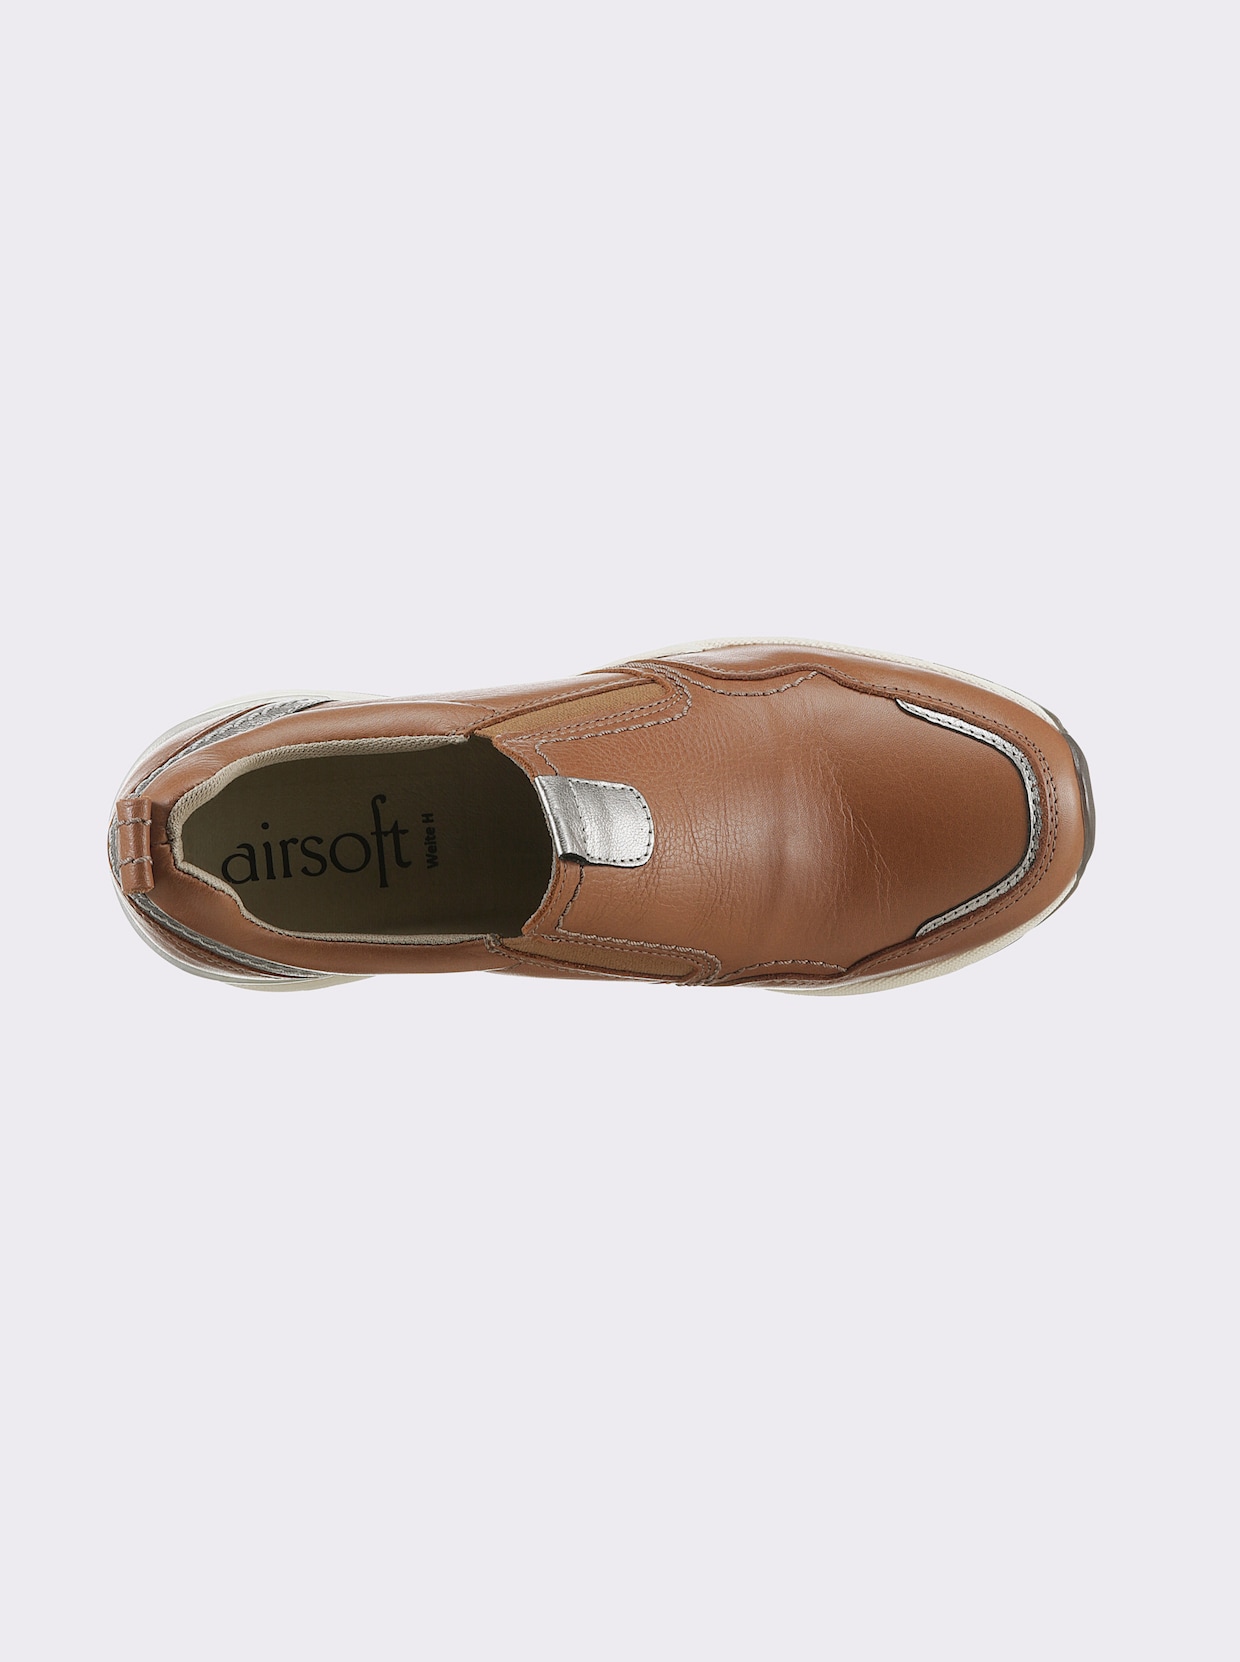 airsoft modern+ Slipper - cognac